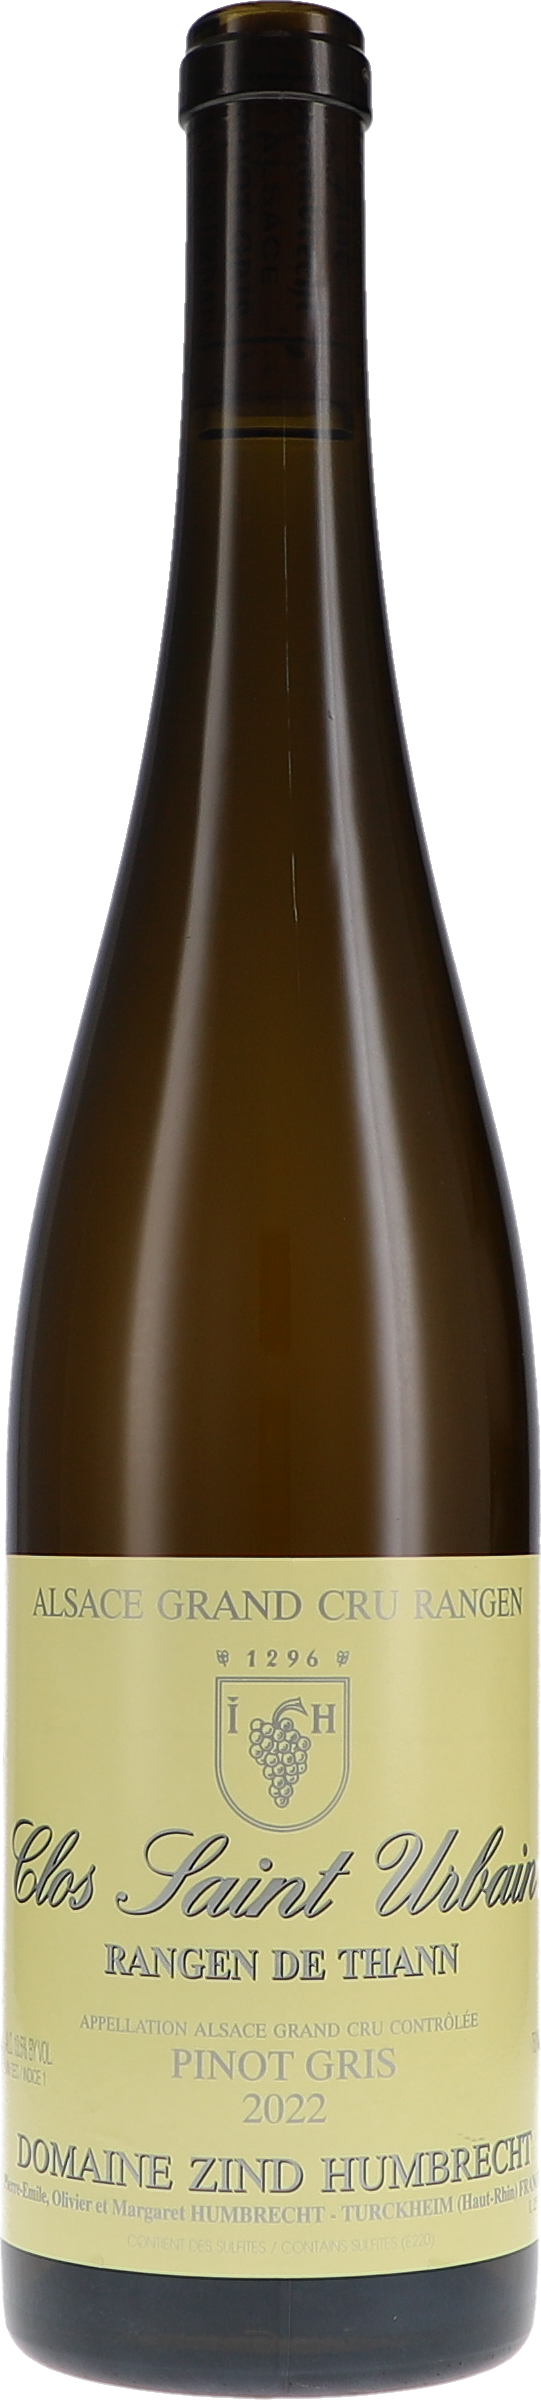 Pinot Gris Rangen de Thann Clos-Saint-Urbain Grand Cru